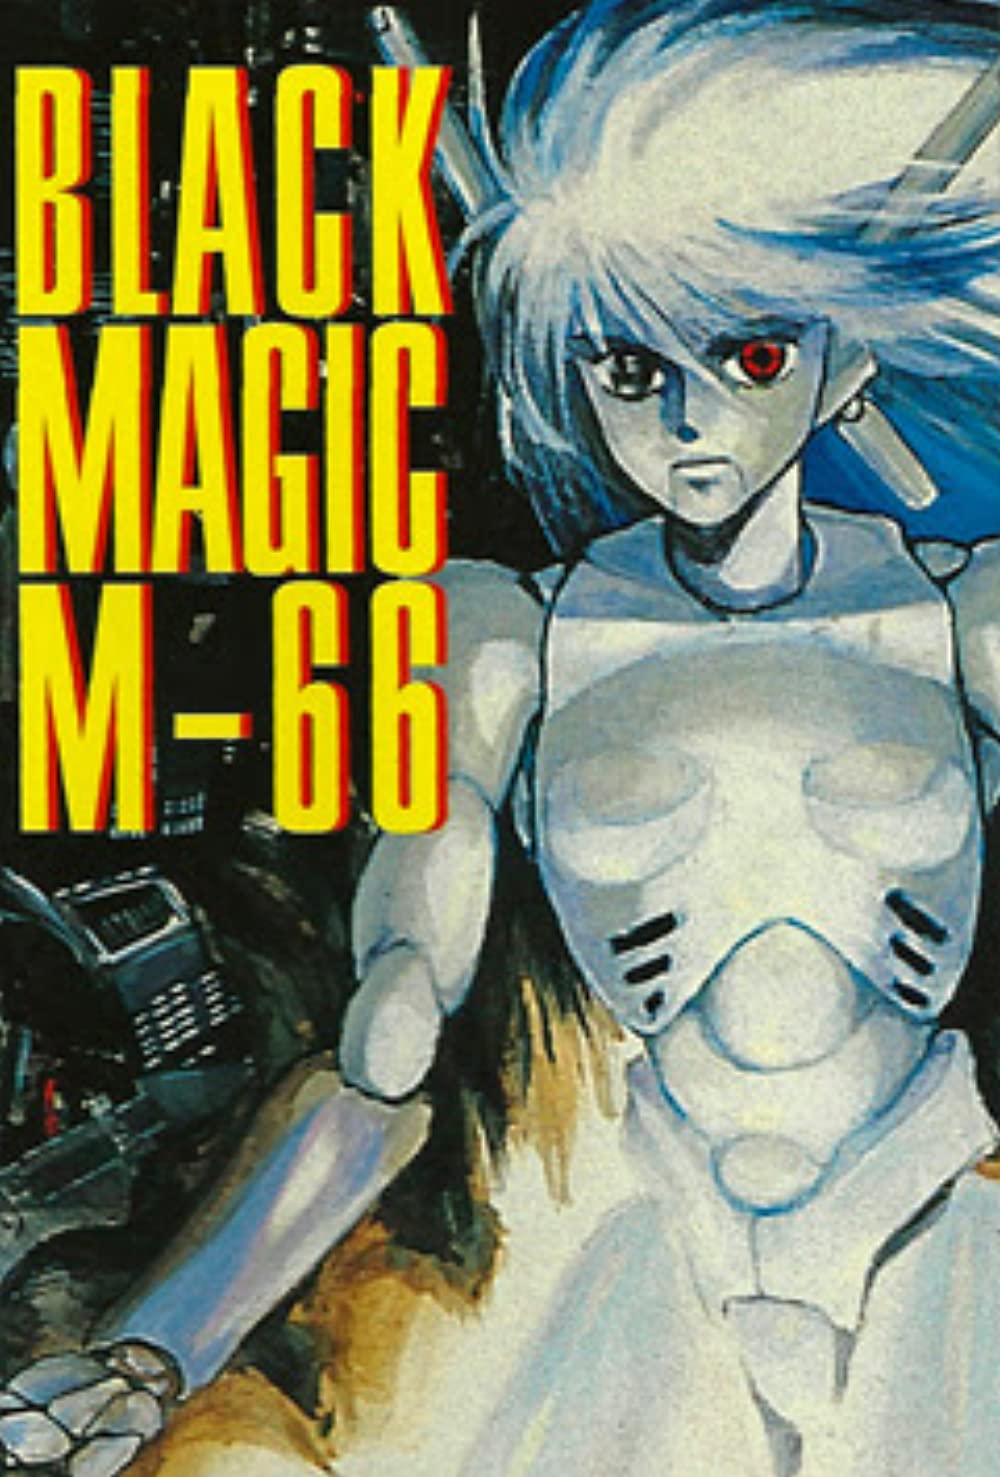 BLACK MAGIC M-66